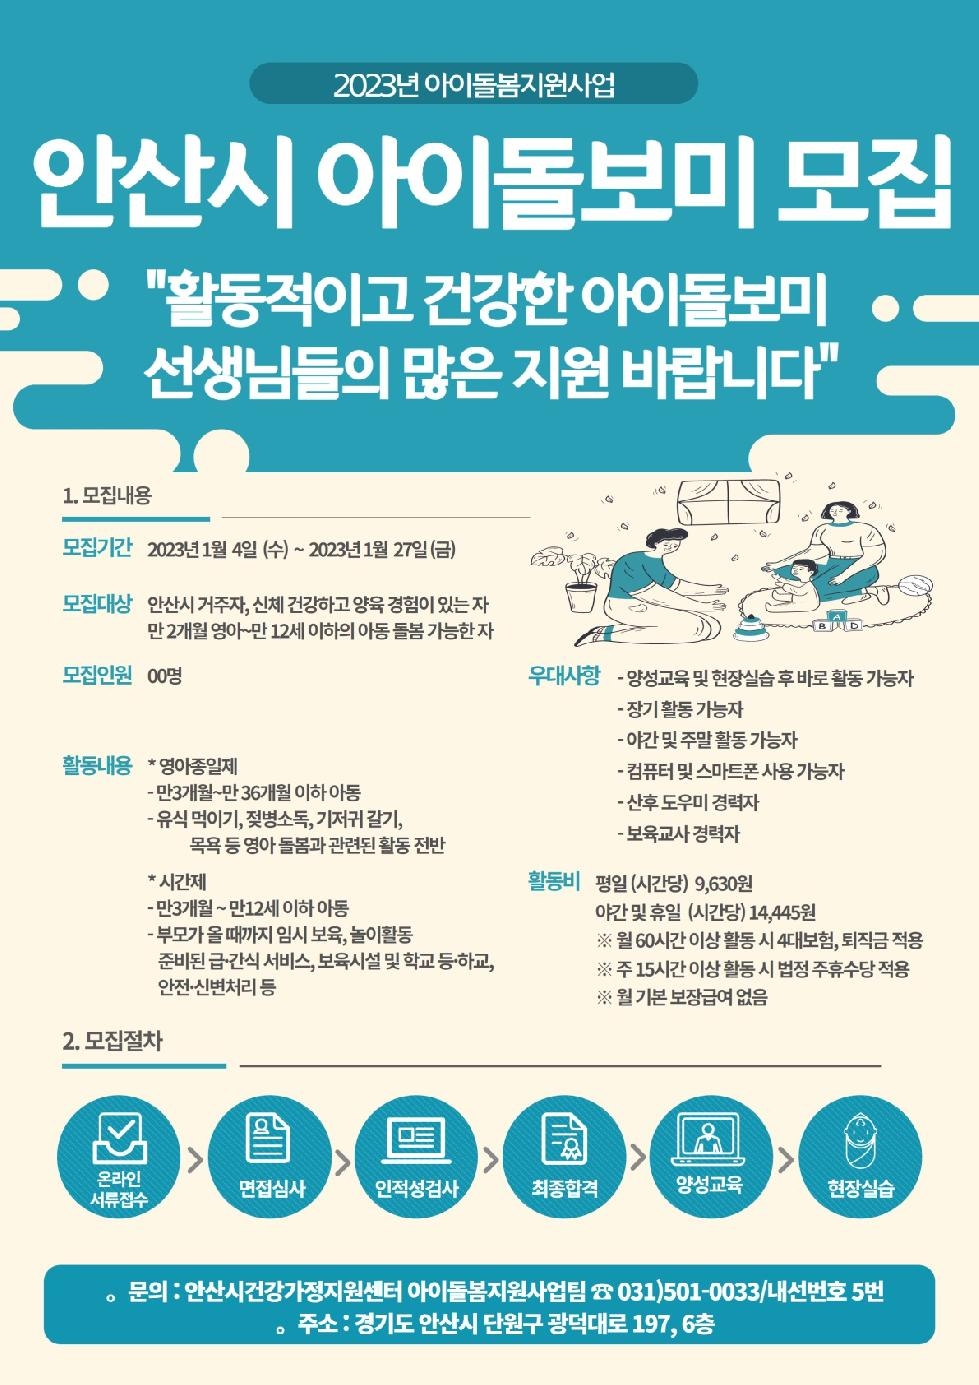 안산시건강가정지원센터, 2023년 신규 아이돌보미 모집